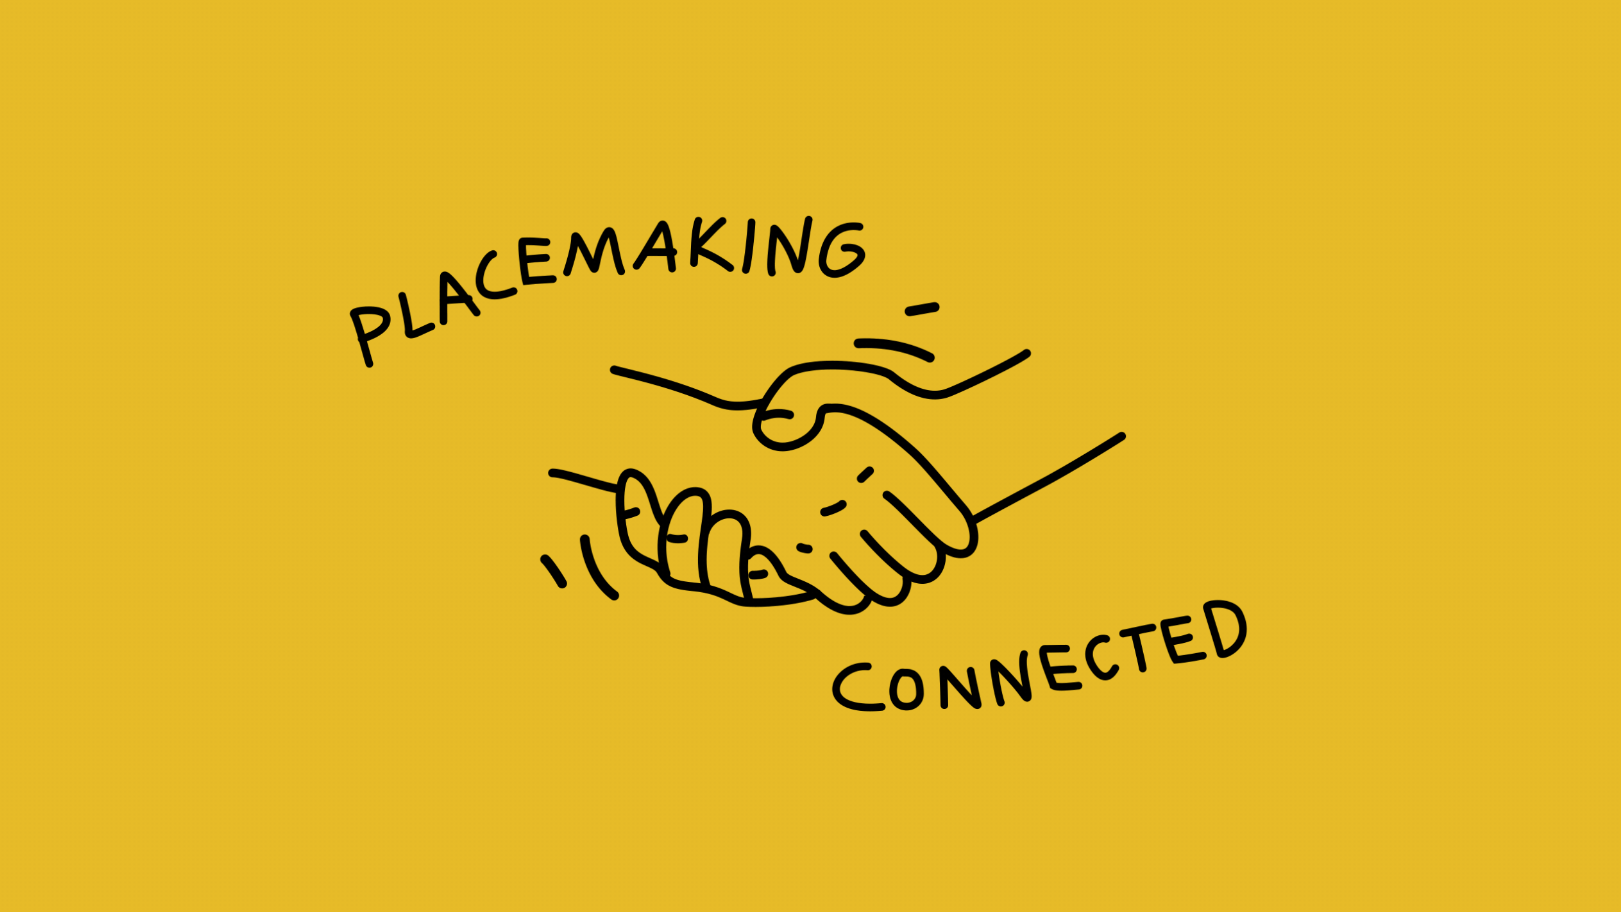 Започва Placemaking Connected – мрежа на организациите за подобряване на публични пространства